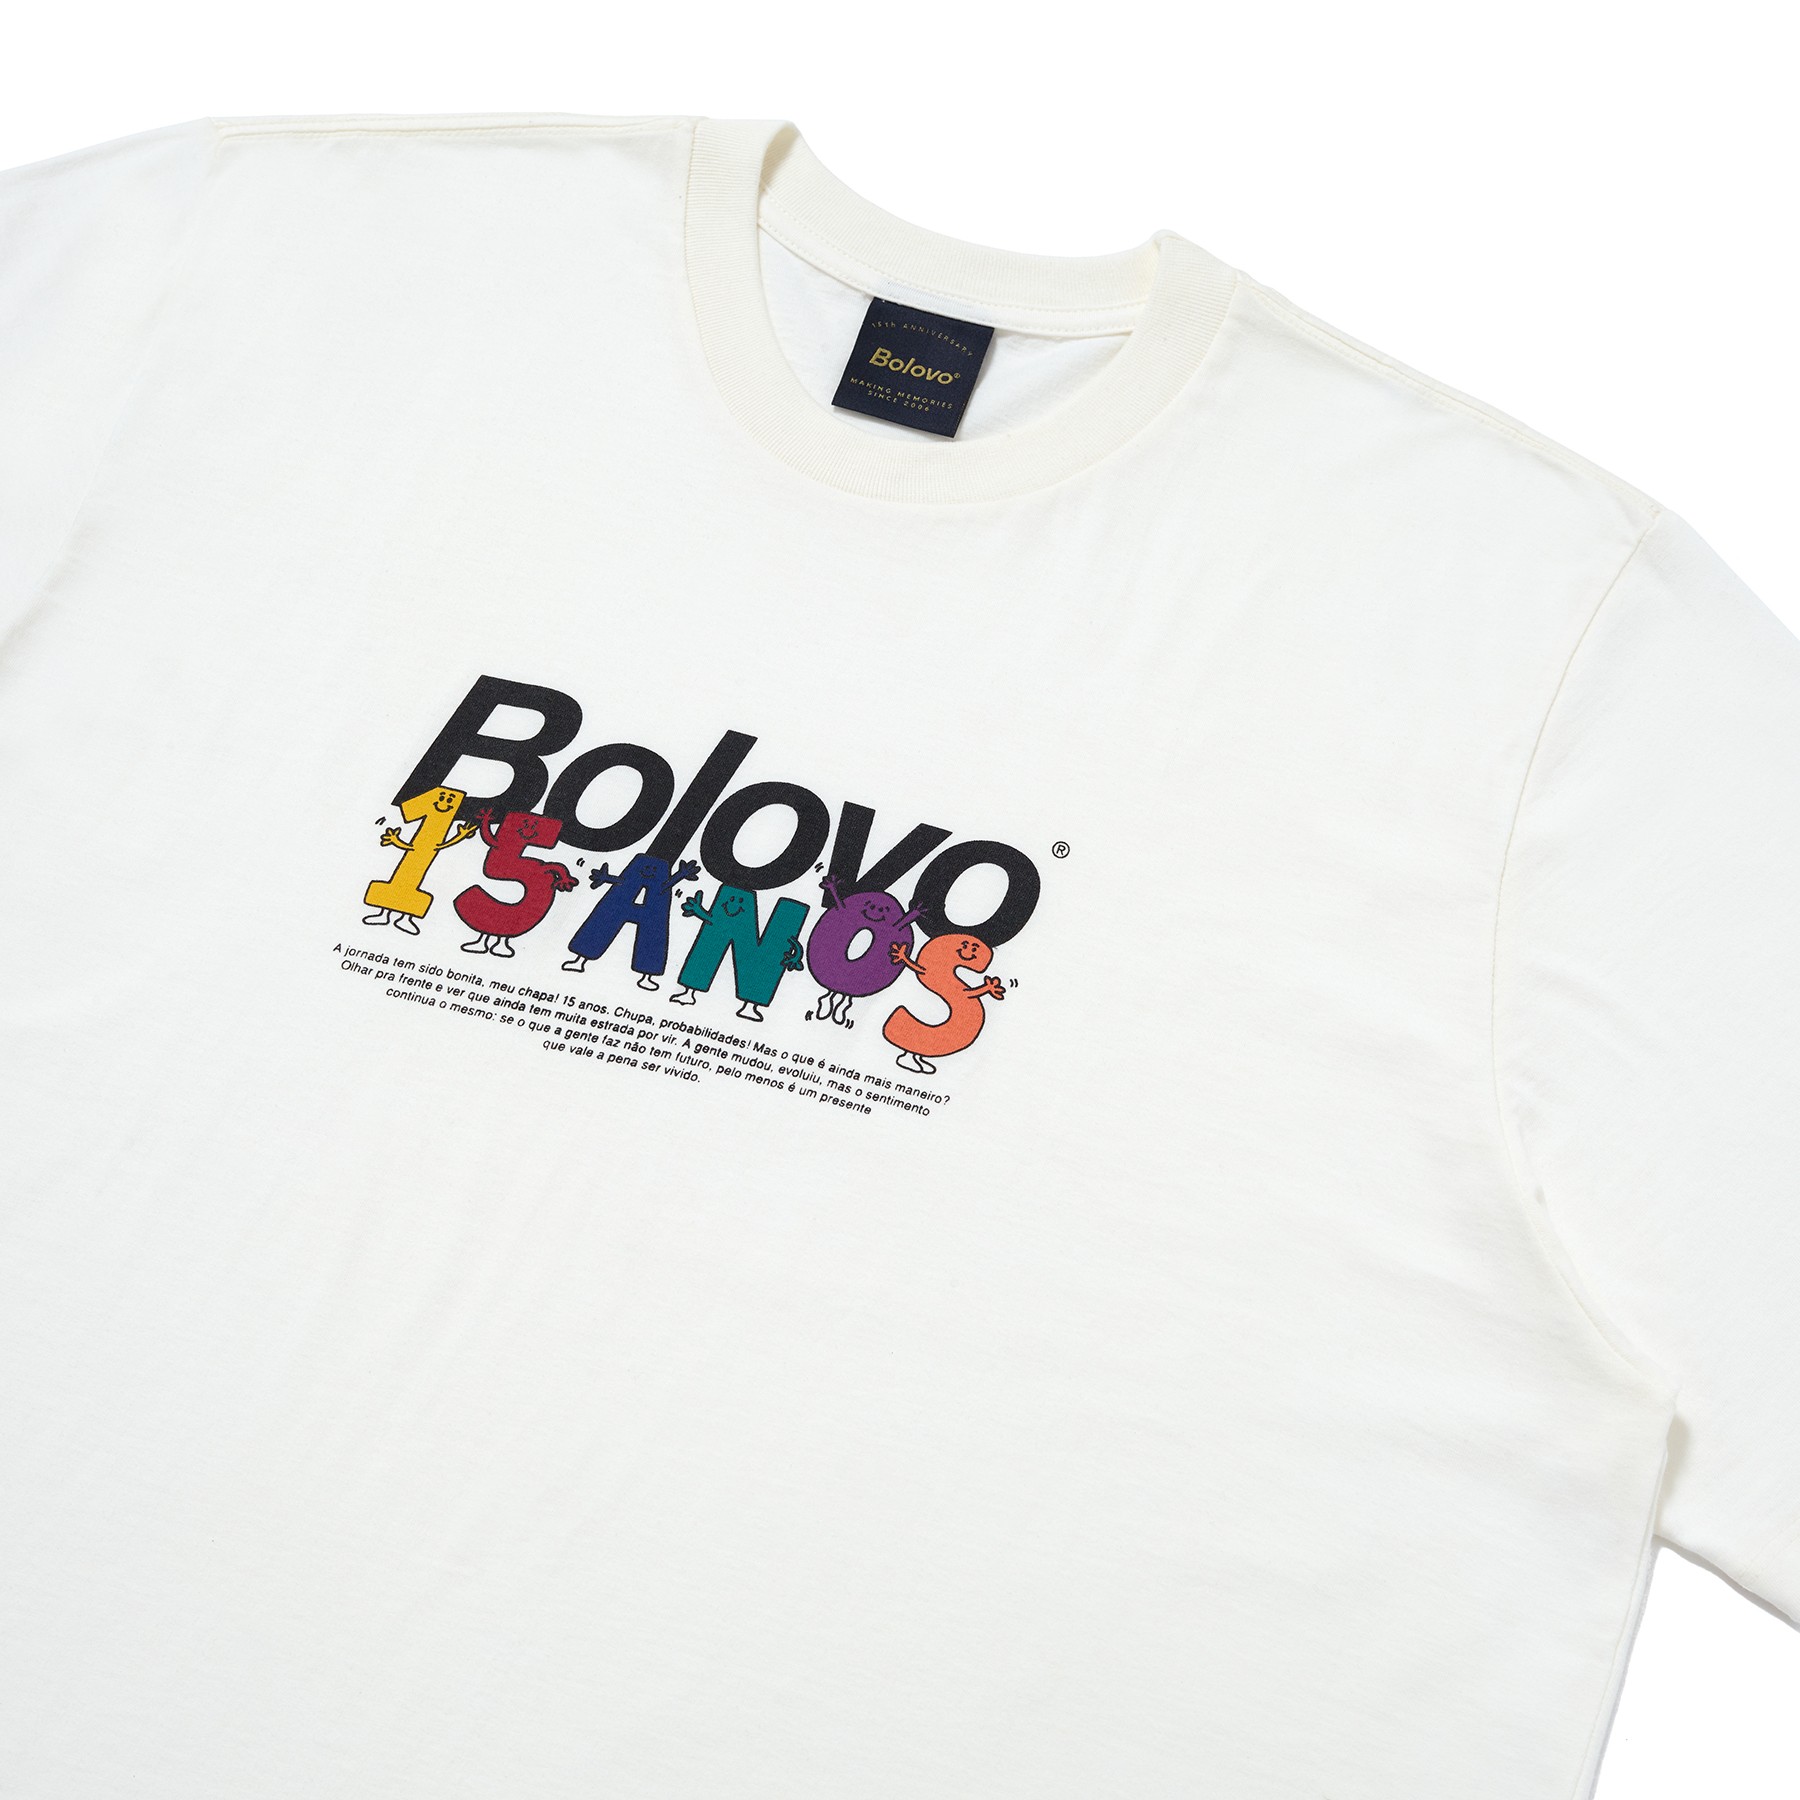 Camiseta 15 Anos ® Off White - BOLOVO